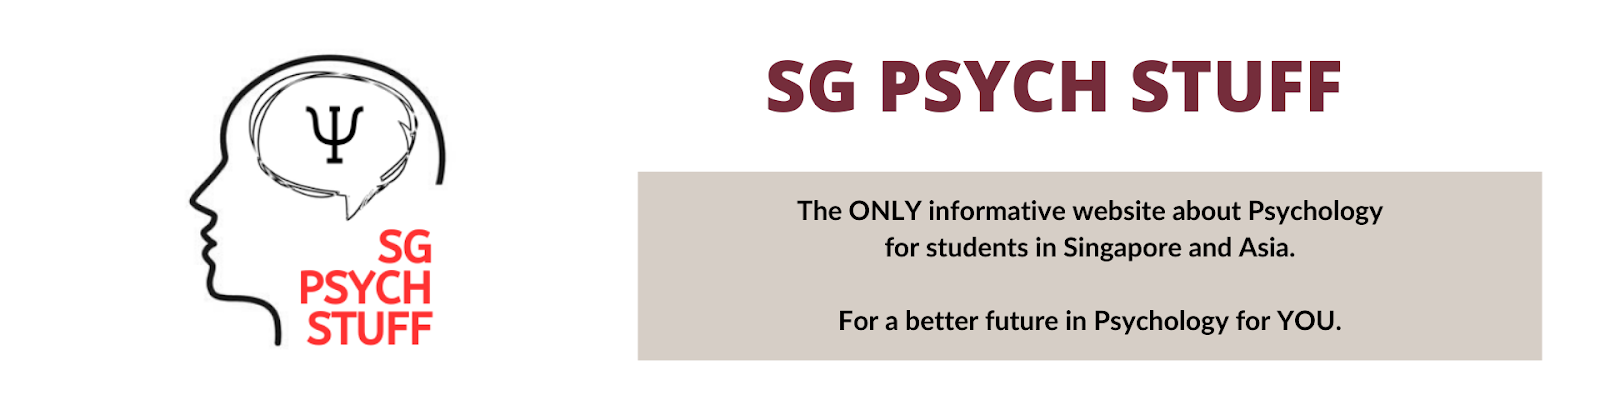 SG Psych Stuff